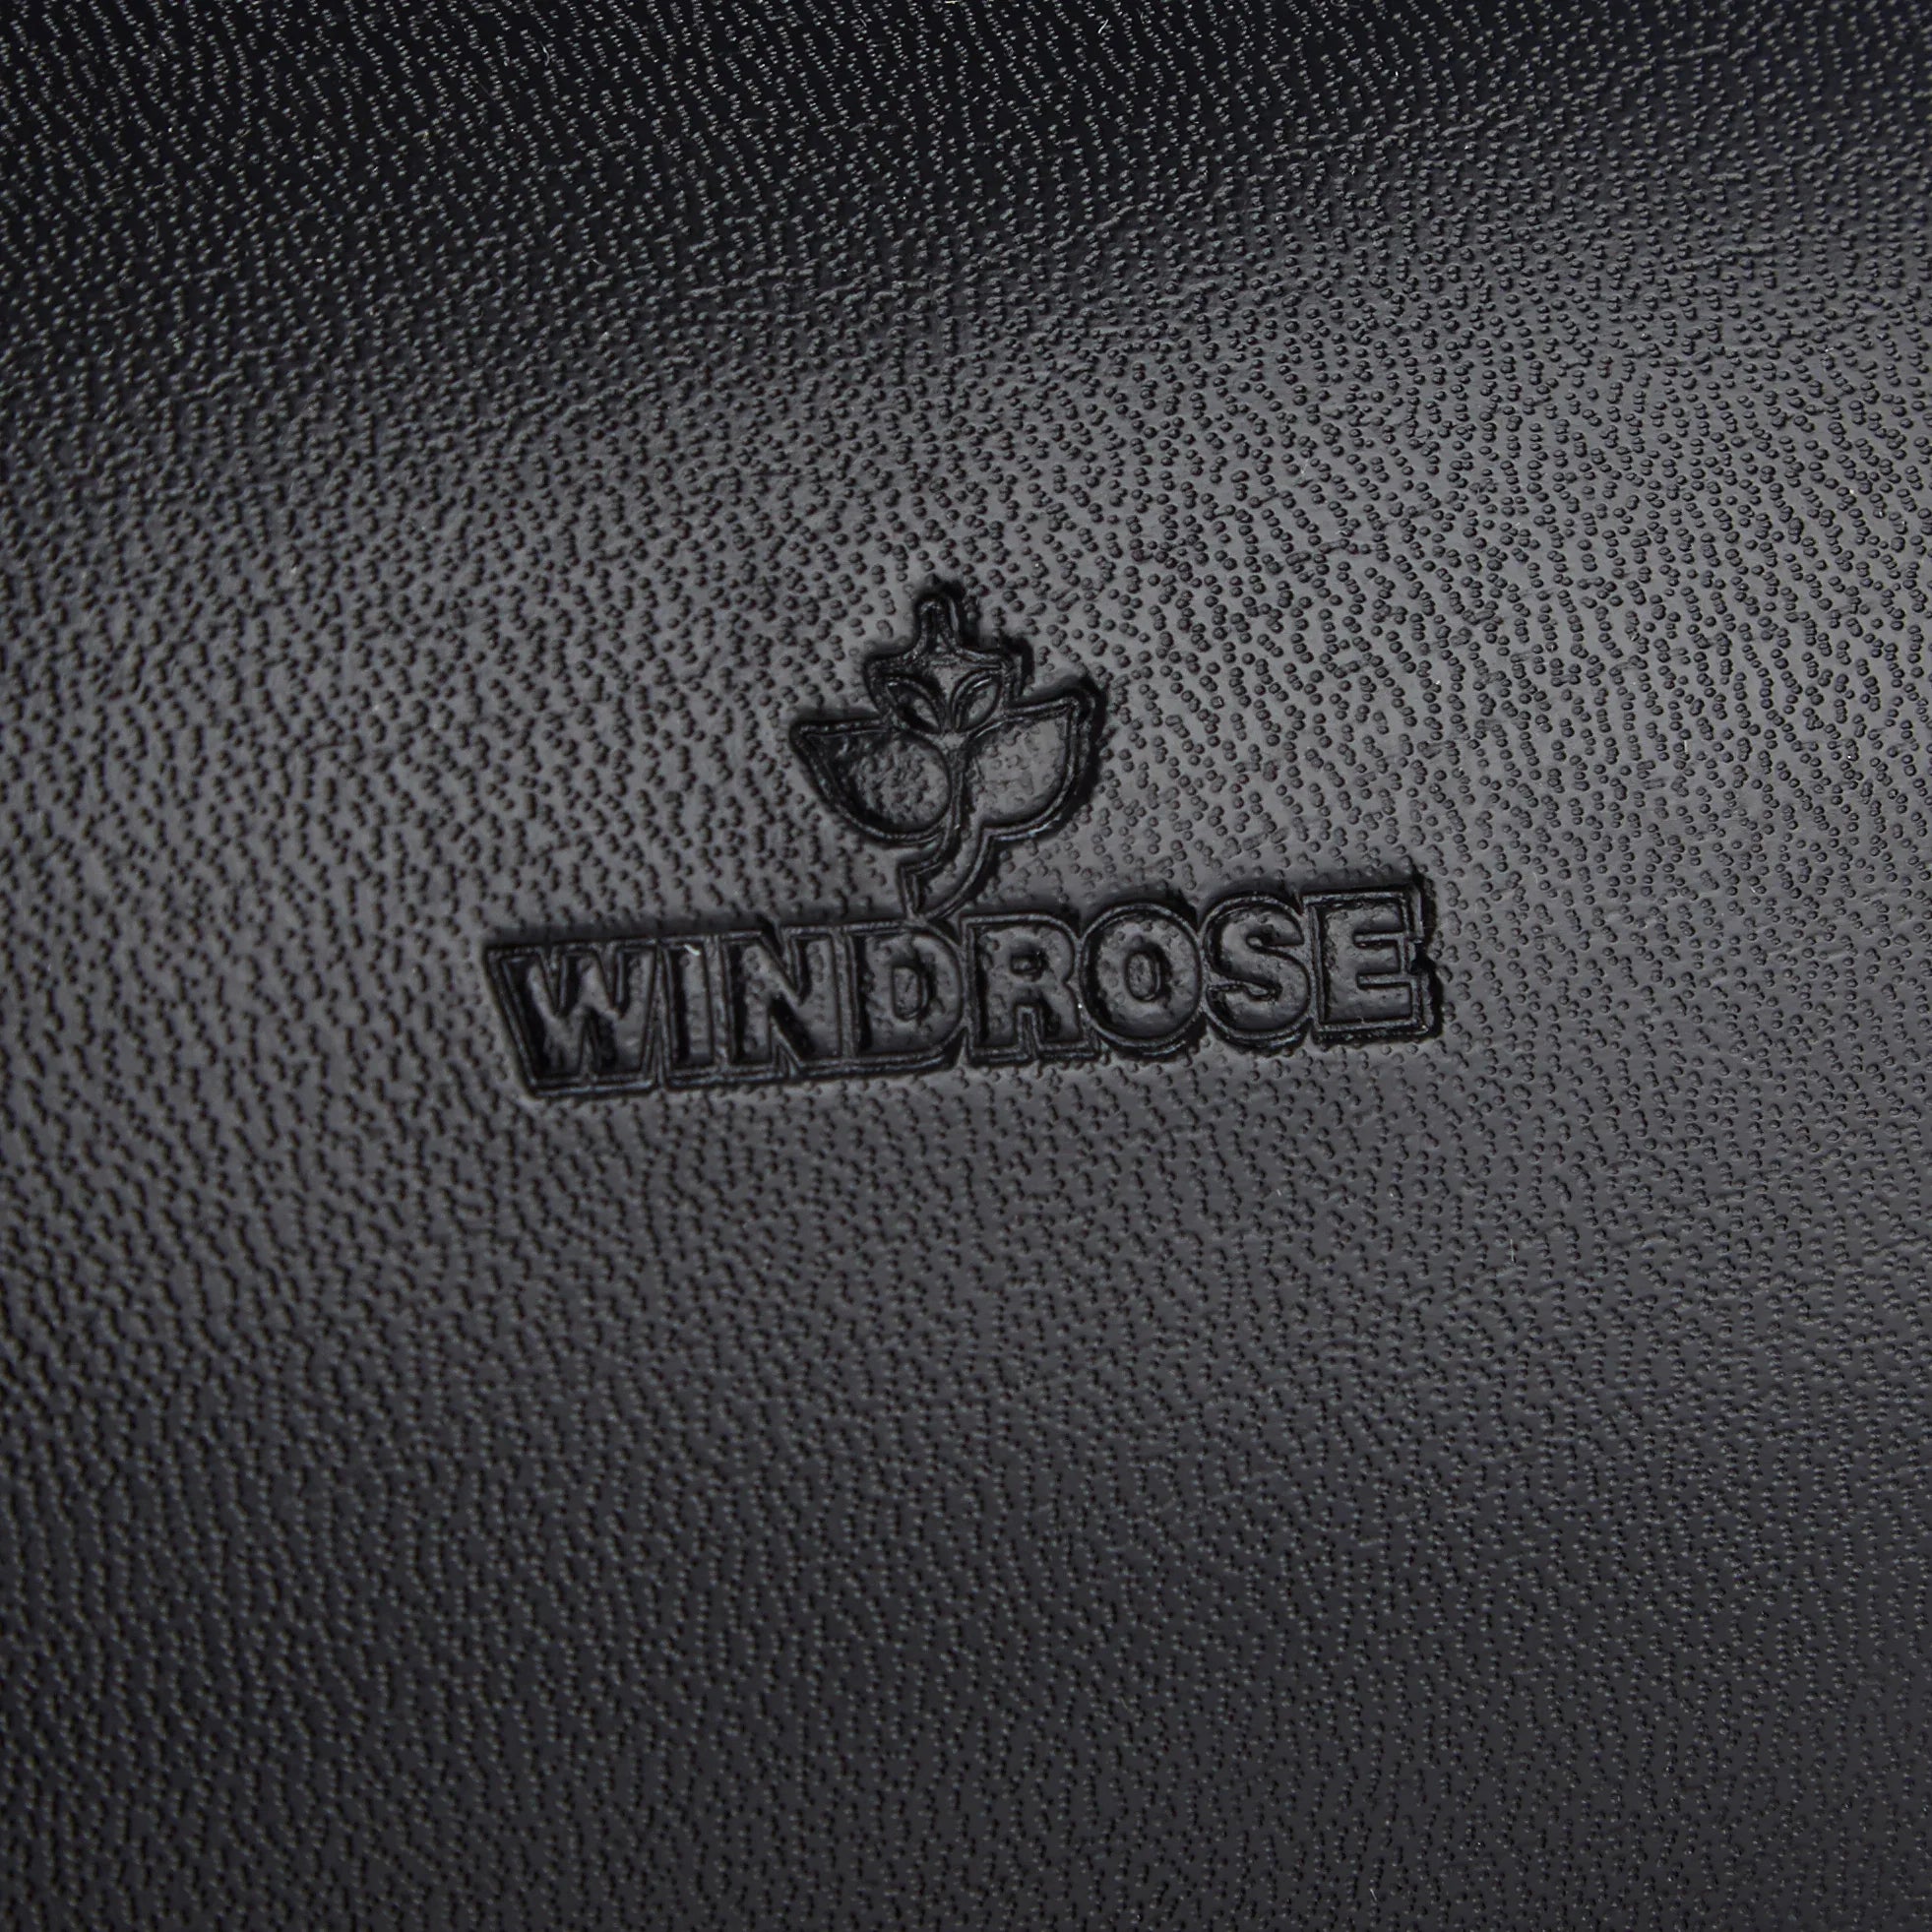 Windrose Merino Schmuckkoffer 4 Etagen 22 cm - schwarz